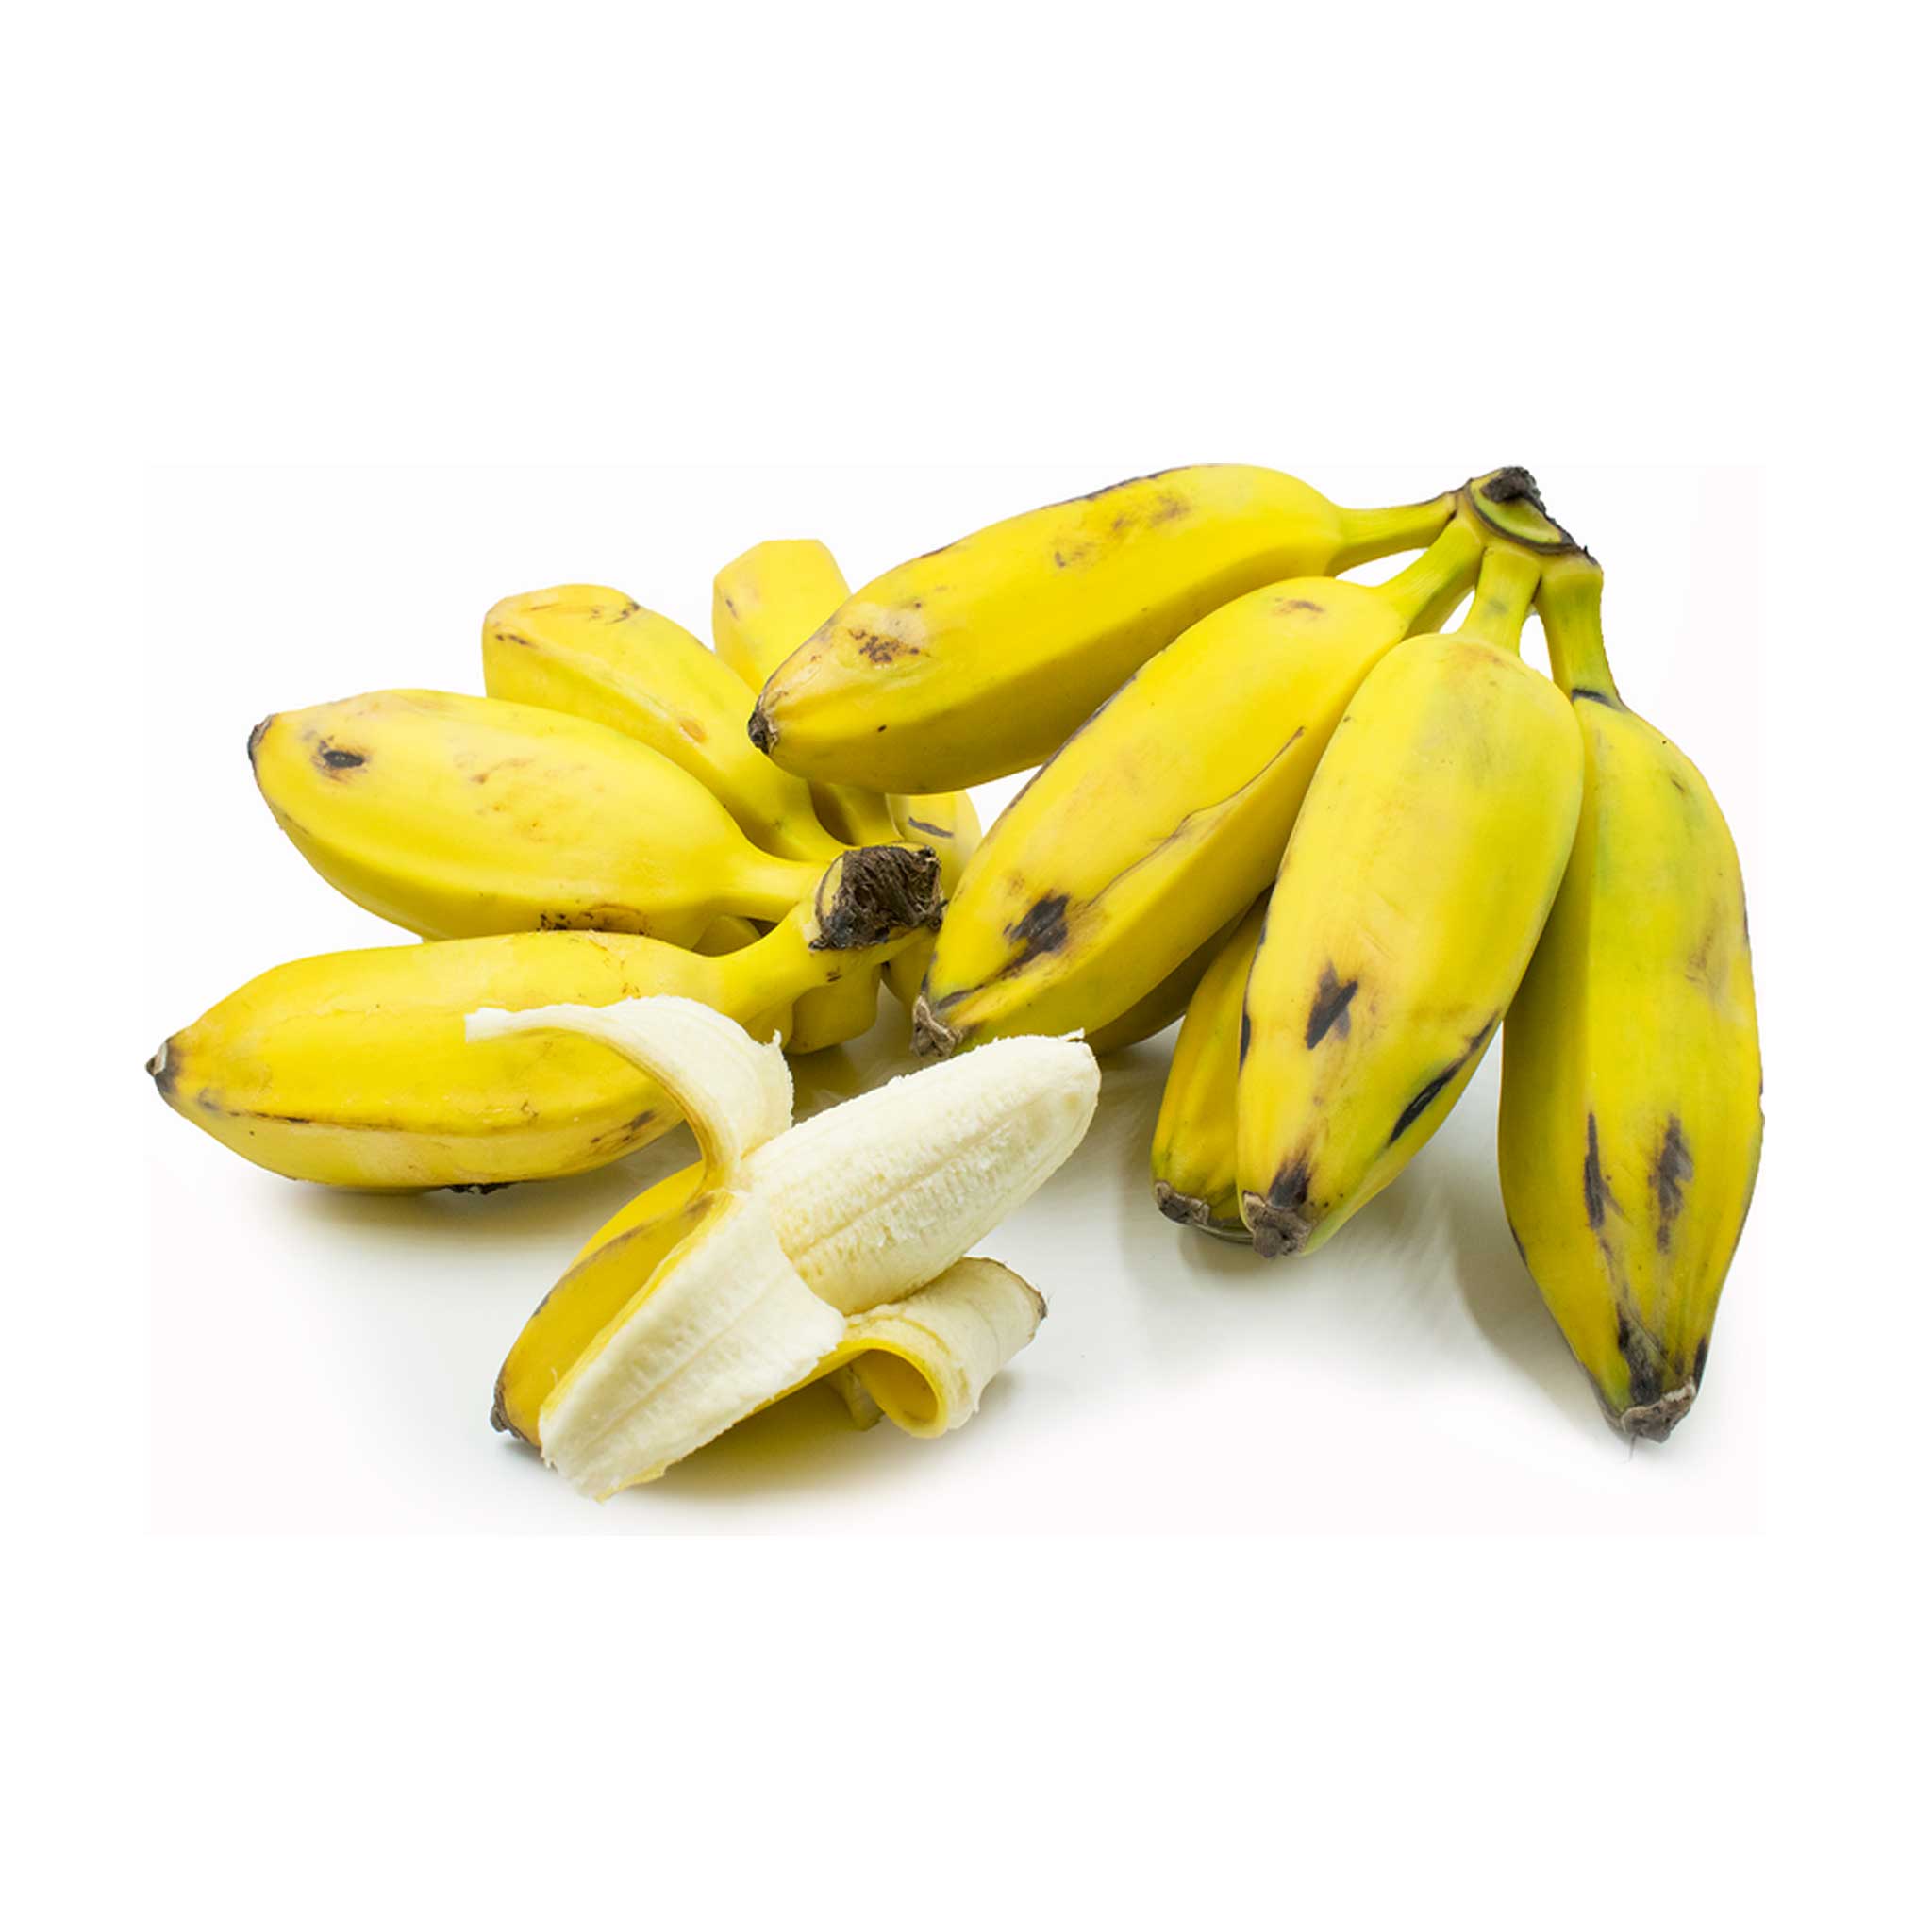 Burro Banana